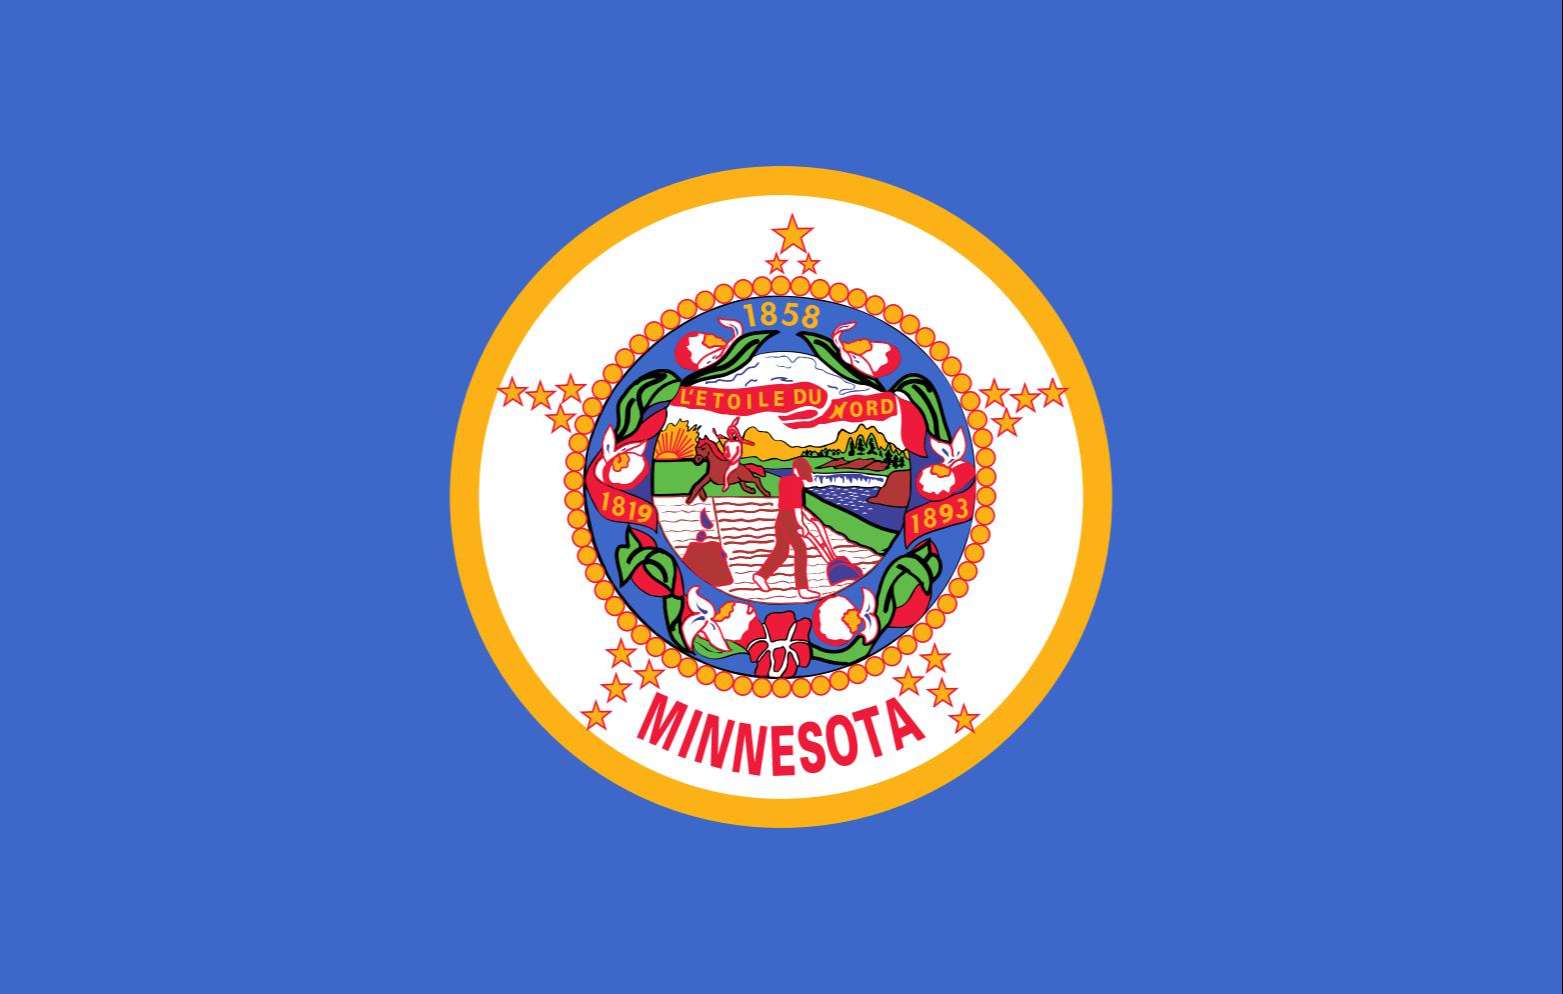 Minnesota State Flag and Seal